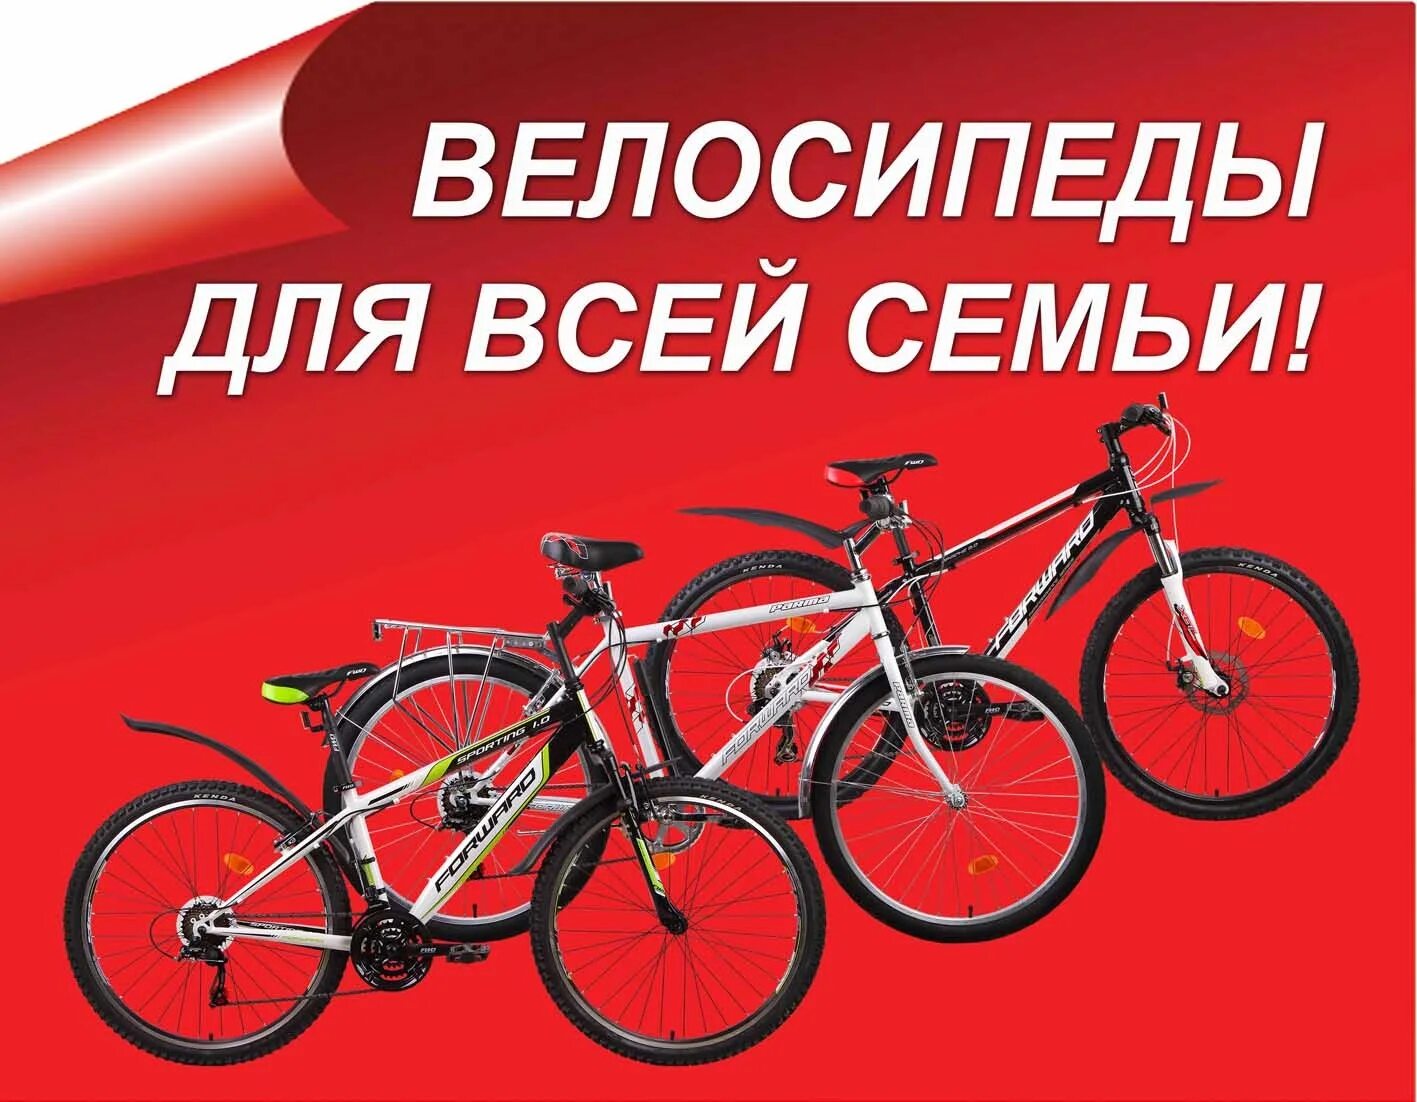 Объявление куплю велик. Реклама магазина велосипедов. Велосипеды баннер. Рекламный баннер велосипеды. Реклама велосипедов баннер.